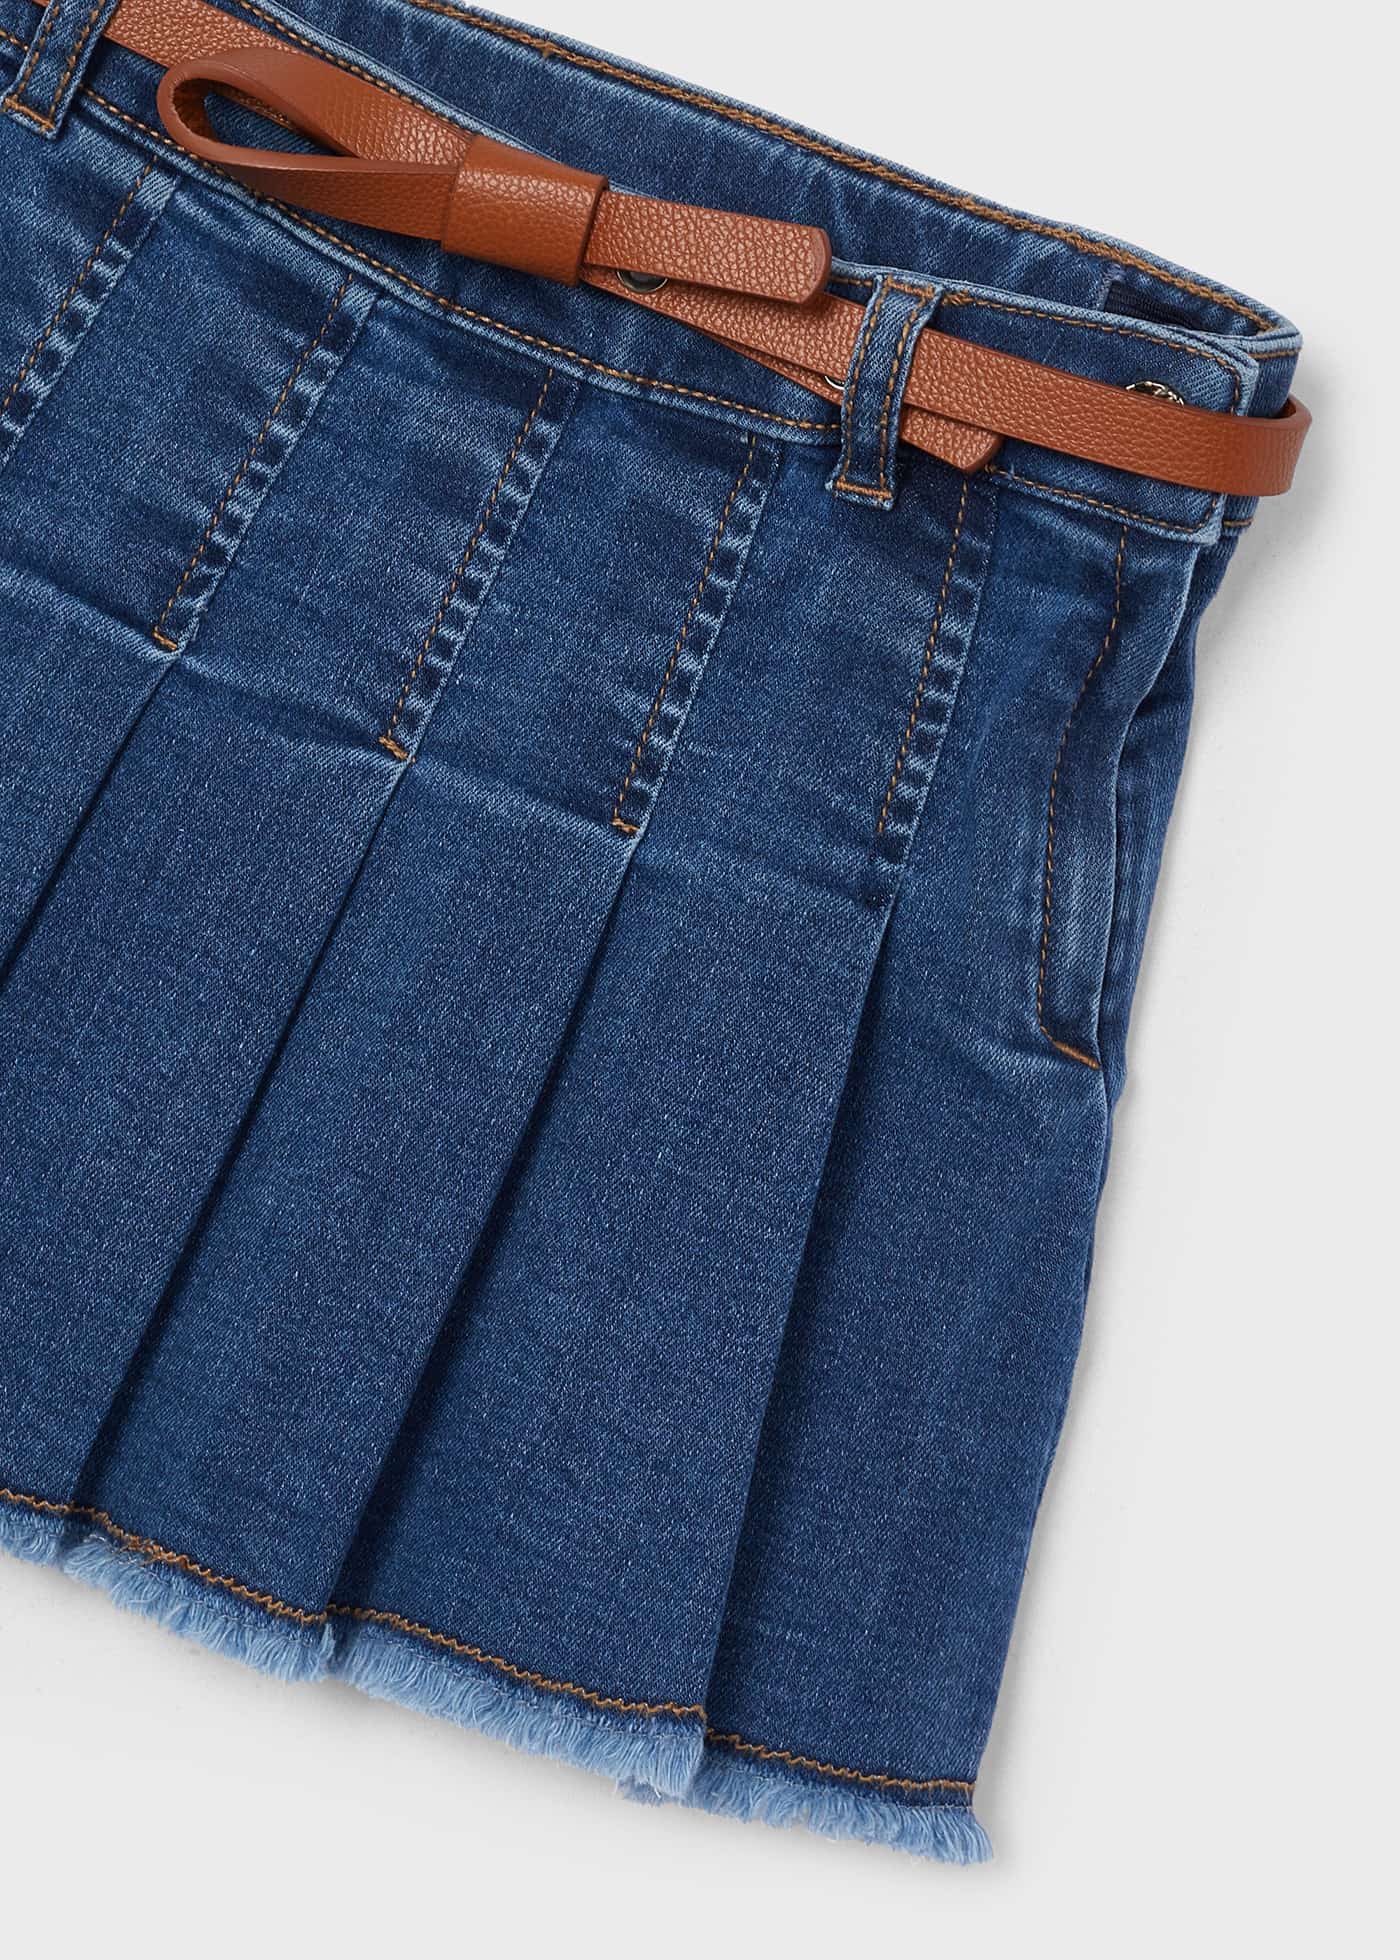 Denim skirt with belt for girls